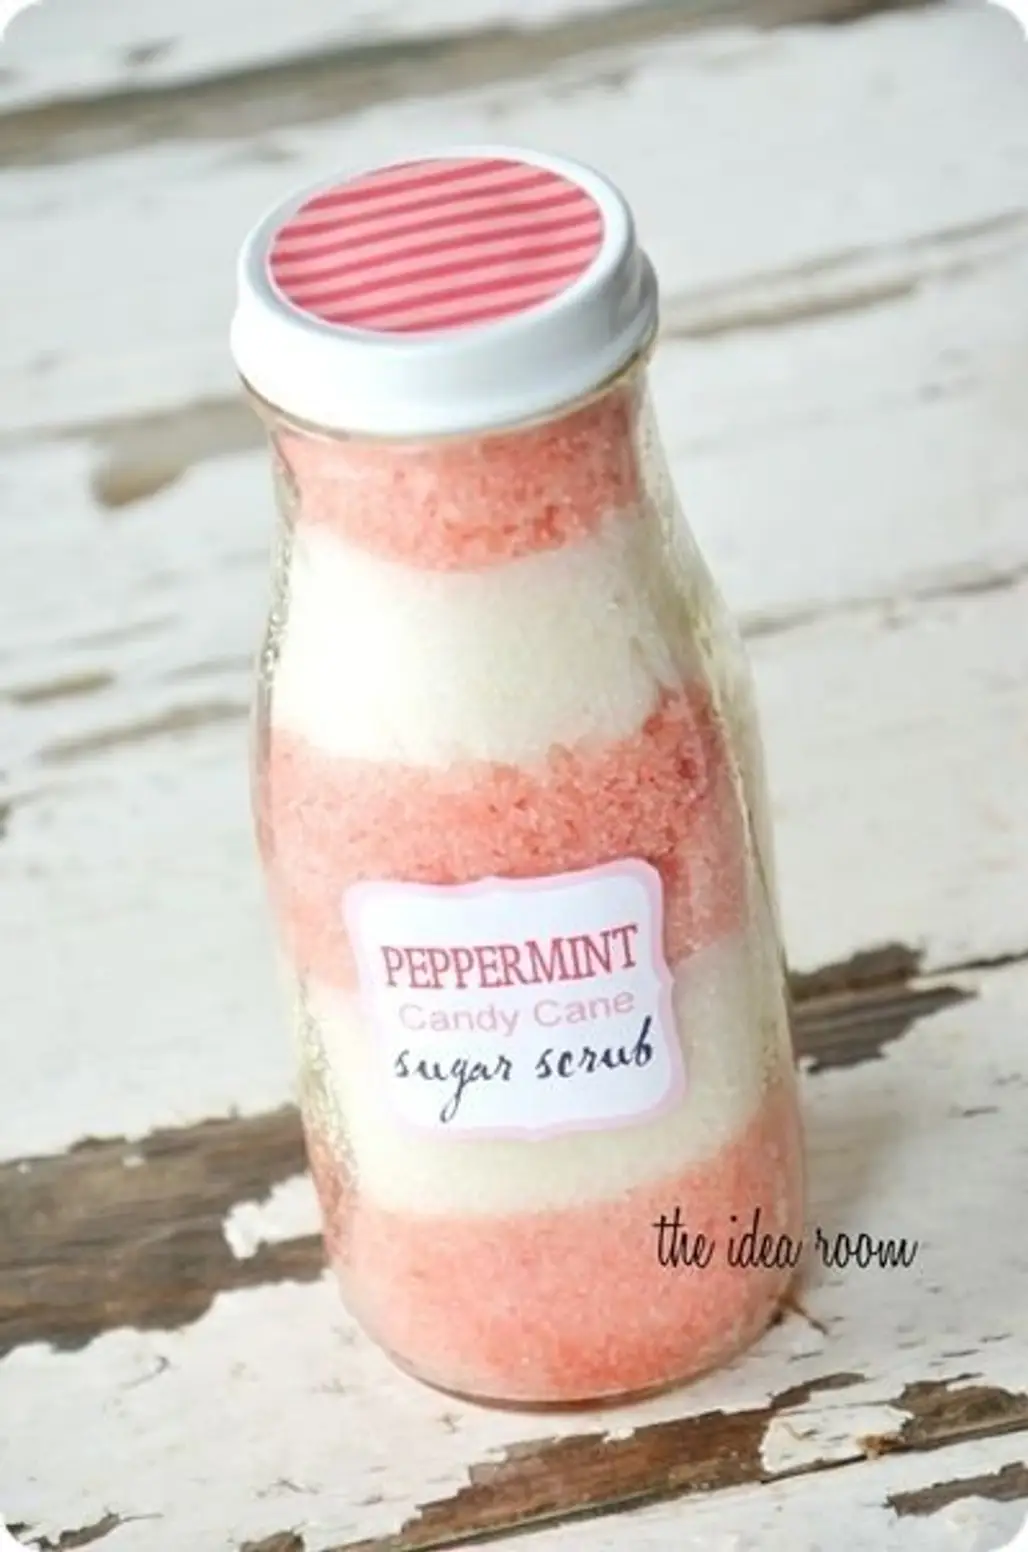 Homemade Peppermint Sugar Scrub